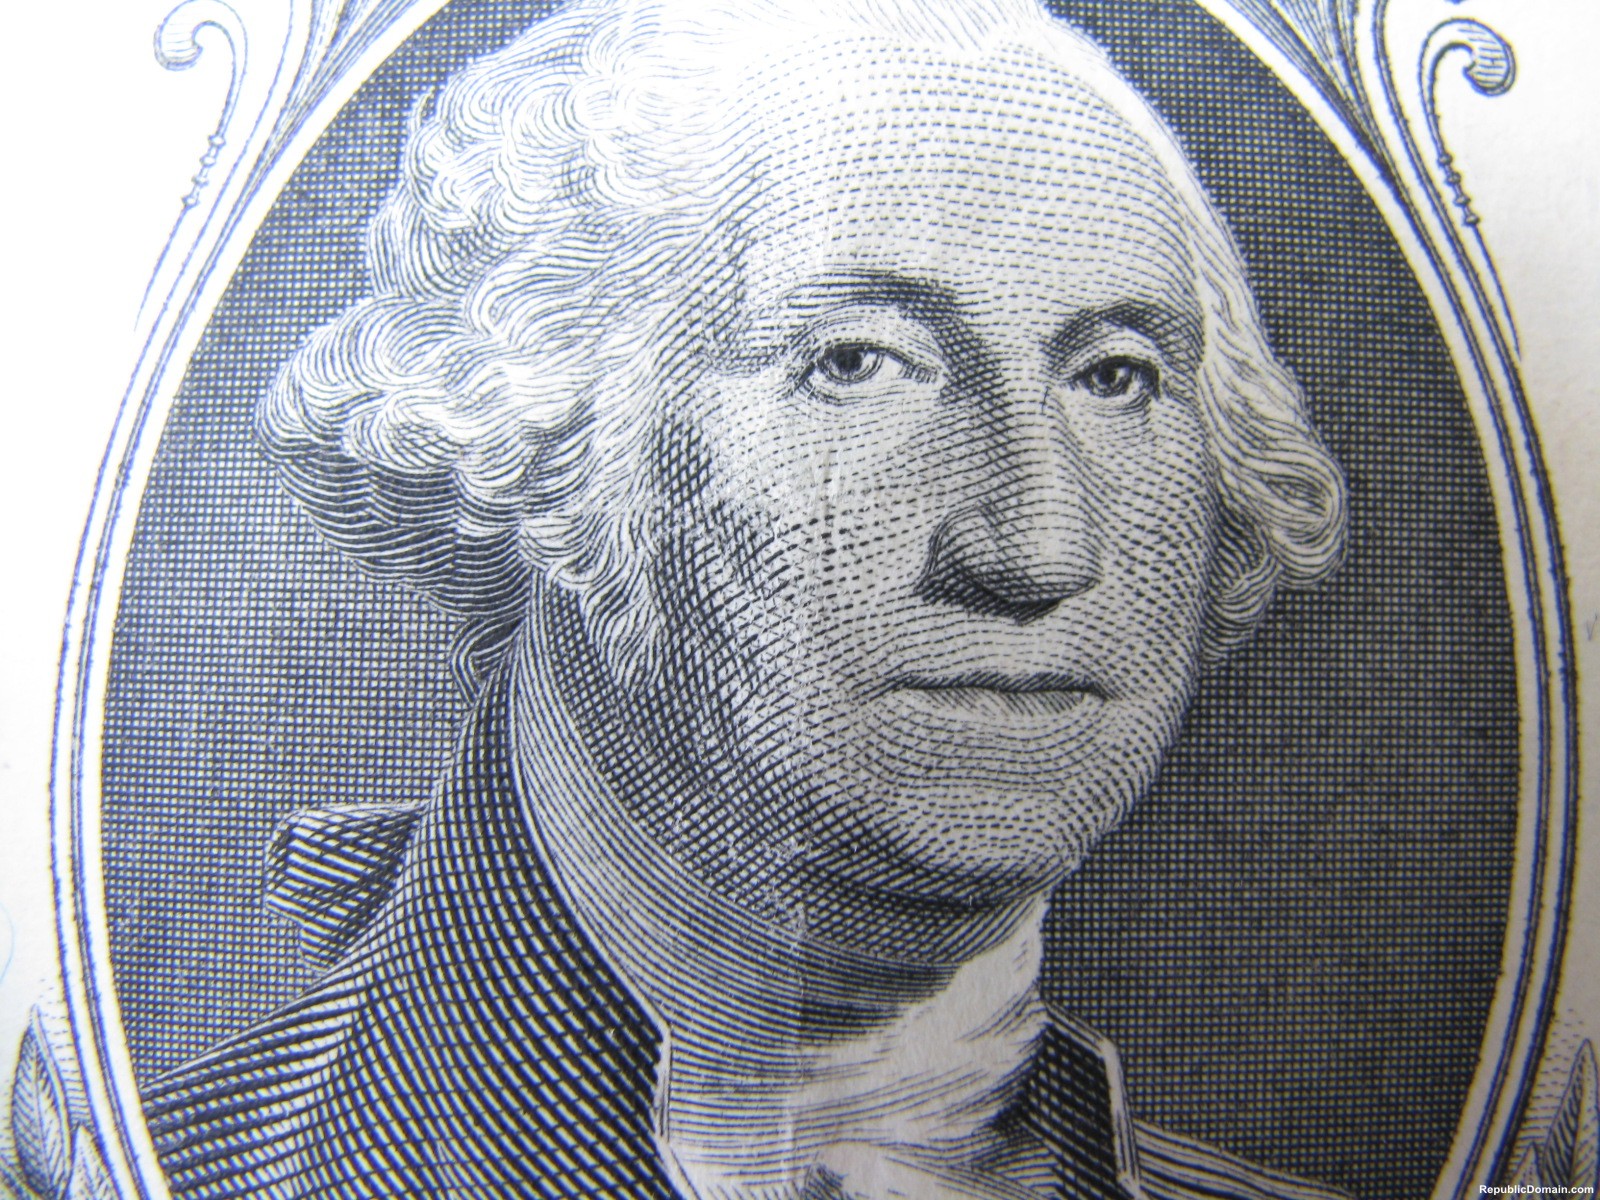 fondos de pantalla de george washington,dinero,cabeza,efectivo,billete de banco,frente